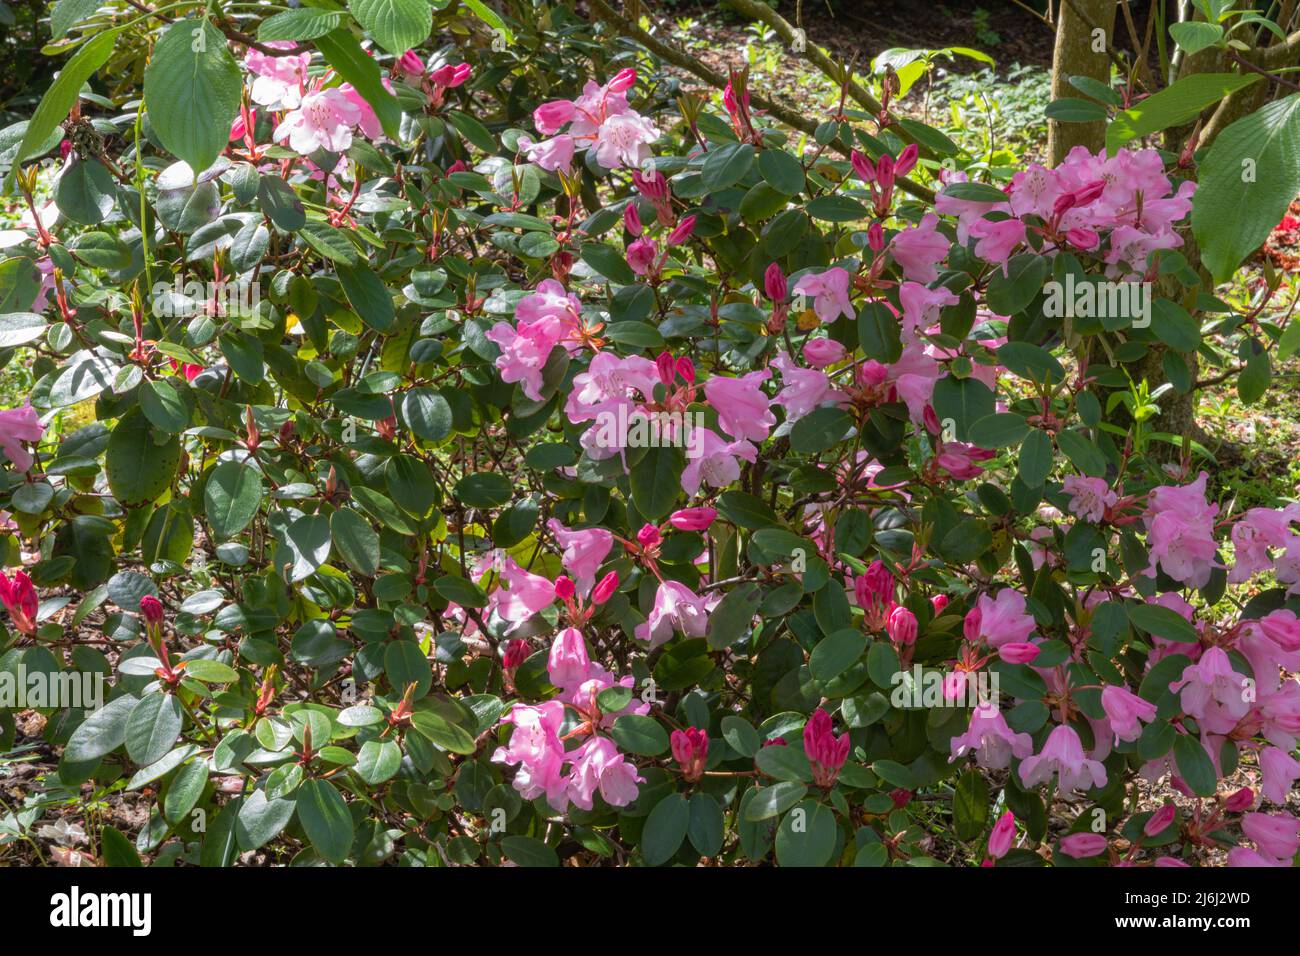 Groupe de brocarts de Rhododendron, un arbuste dur avec des bourgeons rouges profonds qui s'ouvrent à une fleur rose peachy Banque D'Images